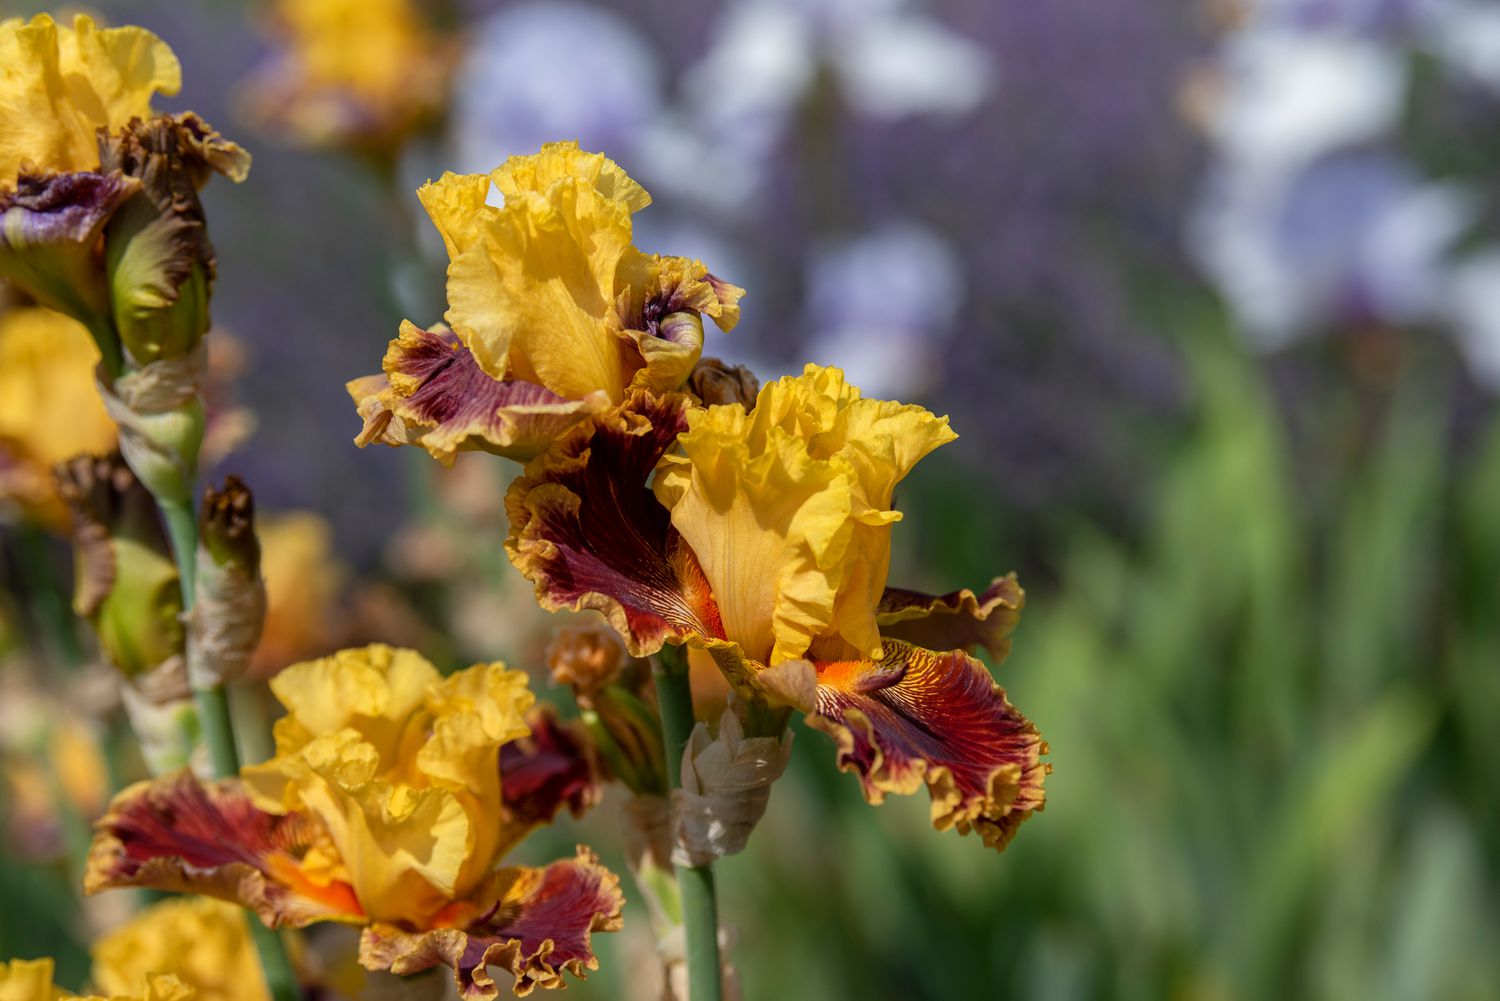 Iris mit gelben Standardblättern und roten und orangefarbenen Herbstblättern am Blütenstiel in Nahaufnahme